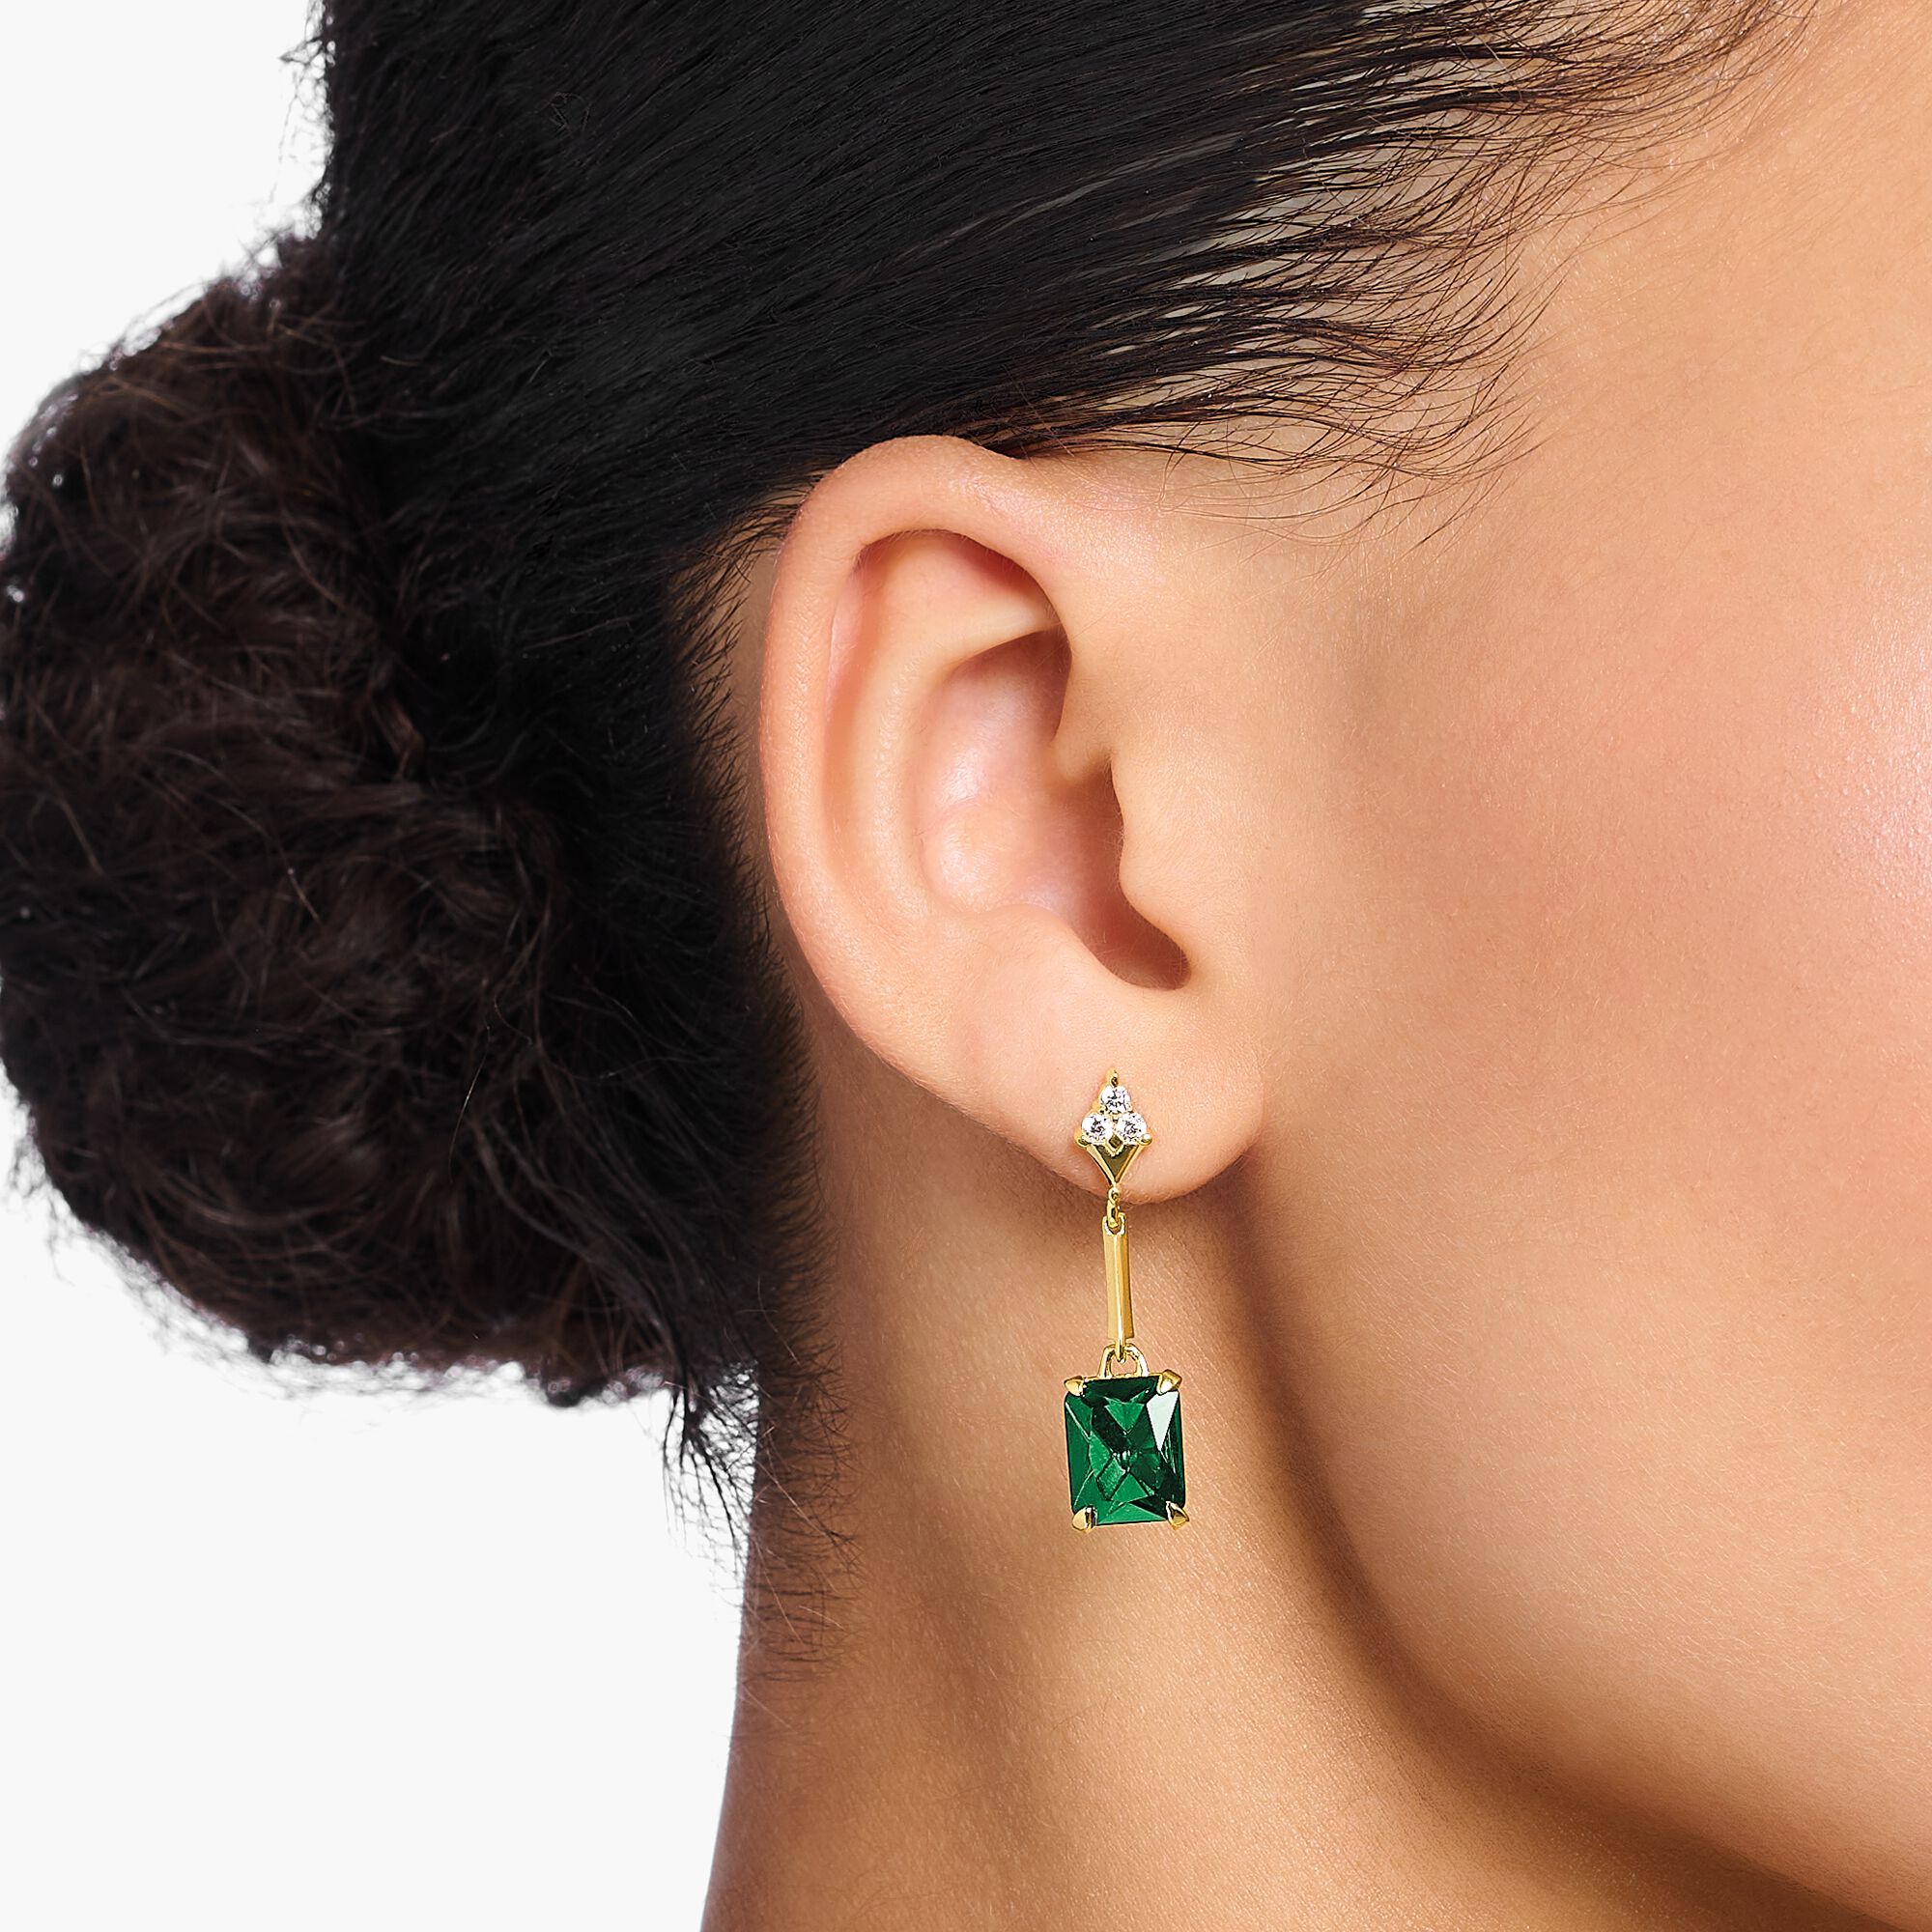 Ohrhänger mit Steinen in Grün & Weiß, vergoldet | THOMAS SABO